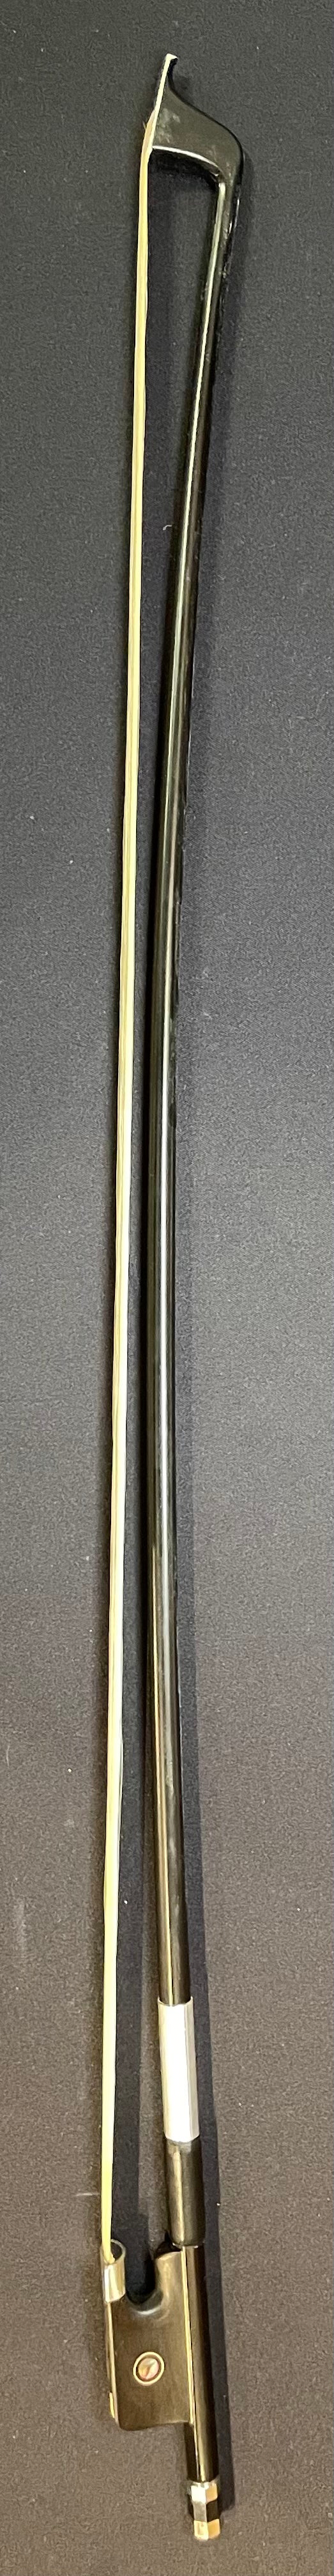 4/4 Cello Bow - BC Fiberglass Model